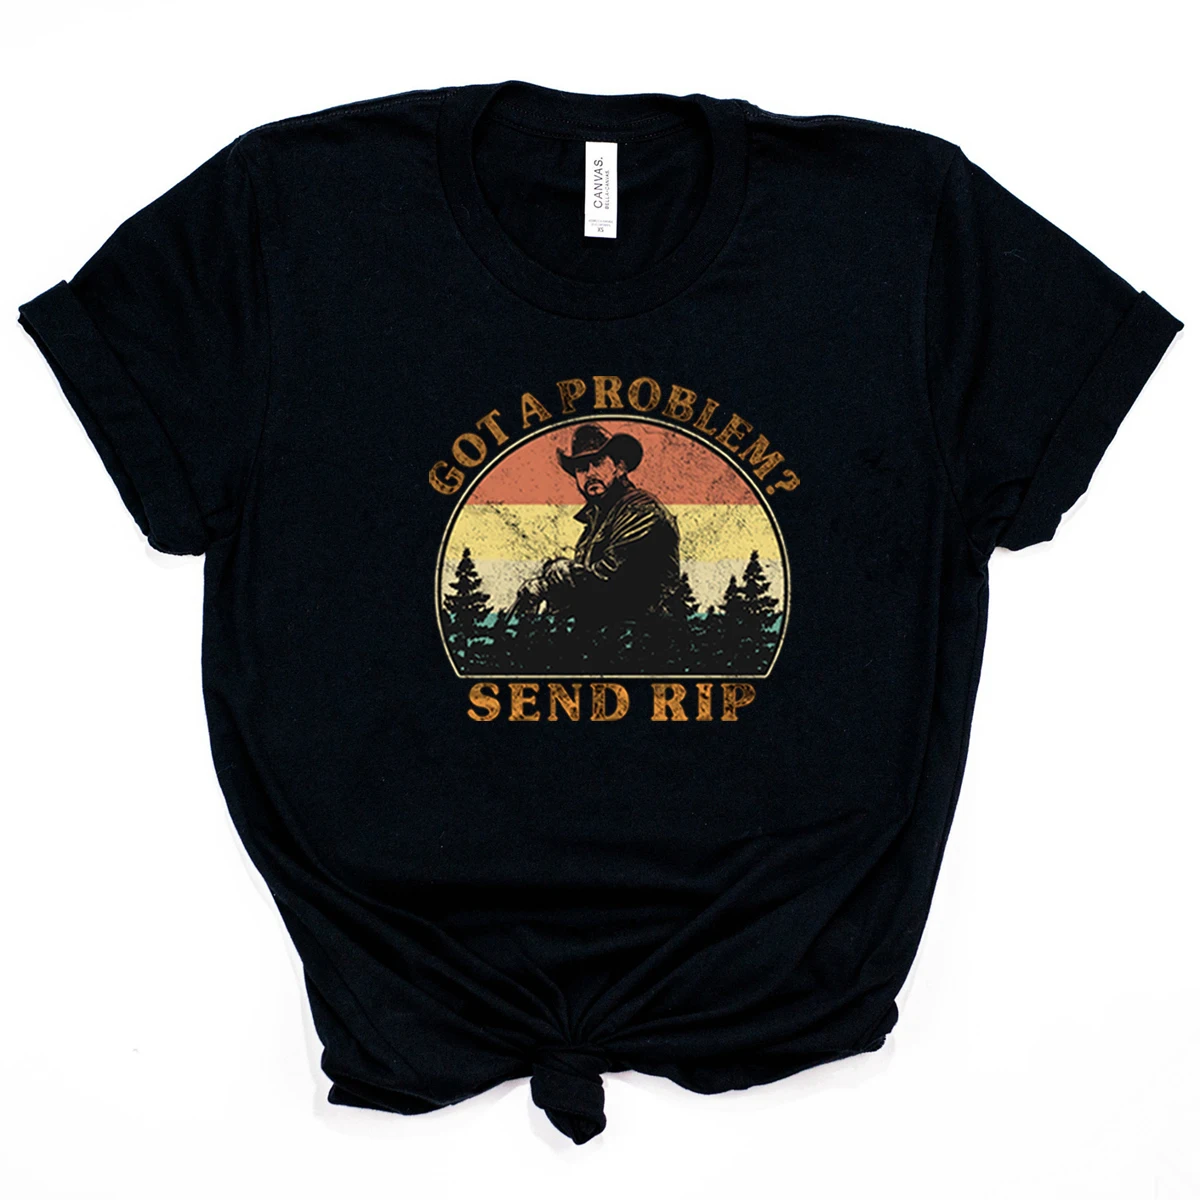 Ho un problema invia maglietta Rip maglietta botton Ranch maglietta Yellowstone eth Dutton Tees Rip Wheeler Graphic Tee Tv Show Inspired Tops